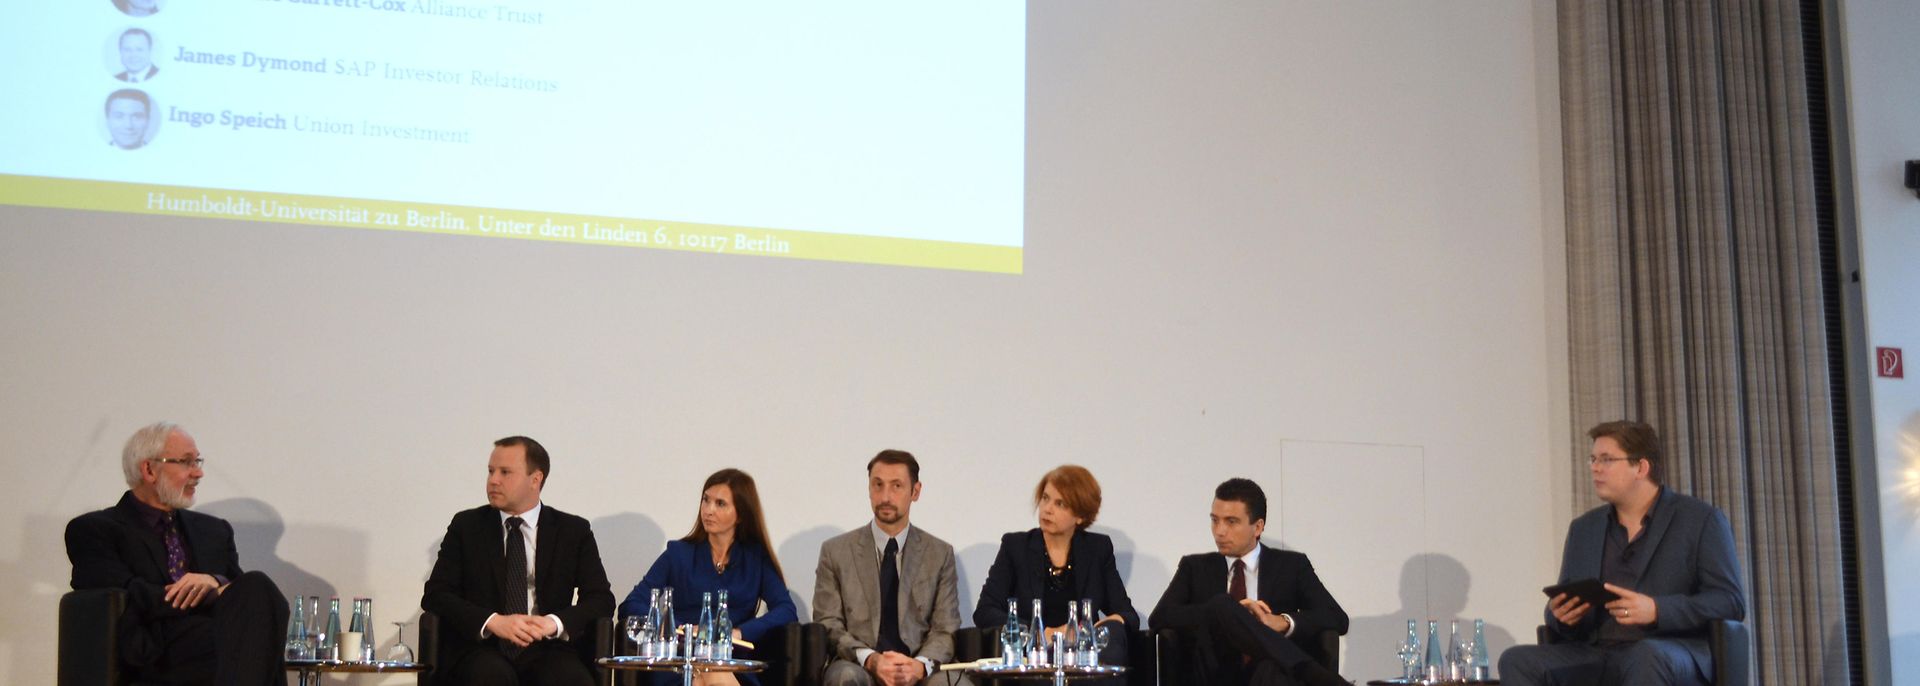 Renata Casaro und Jean-Baptiste Santoul bei CSR-Konferenz in Berlin